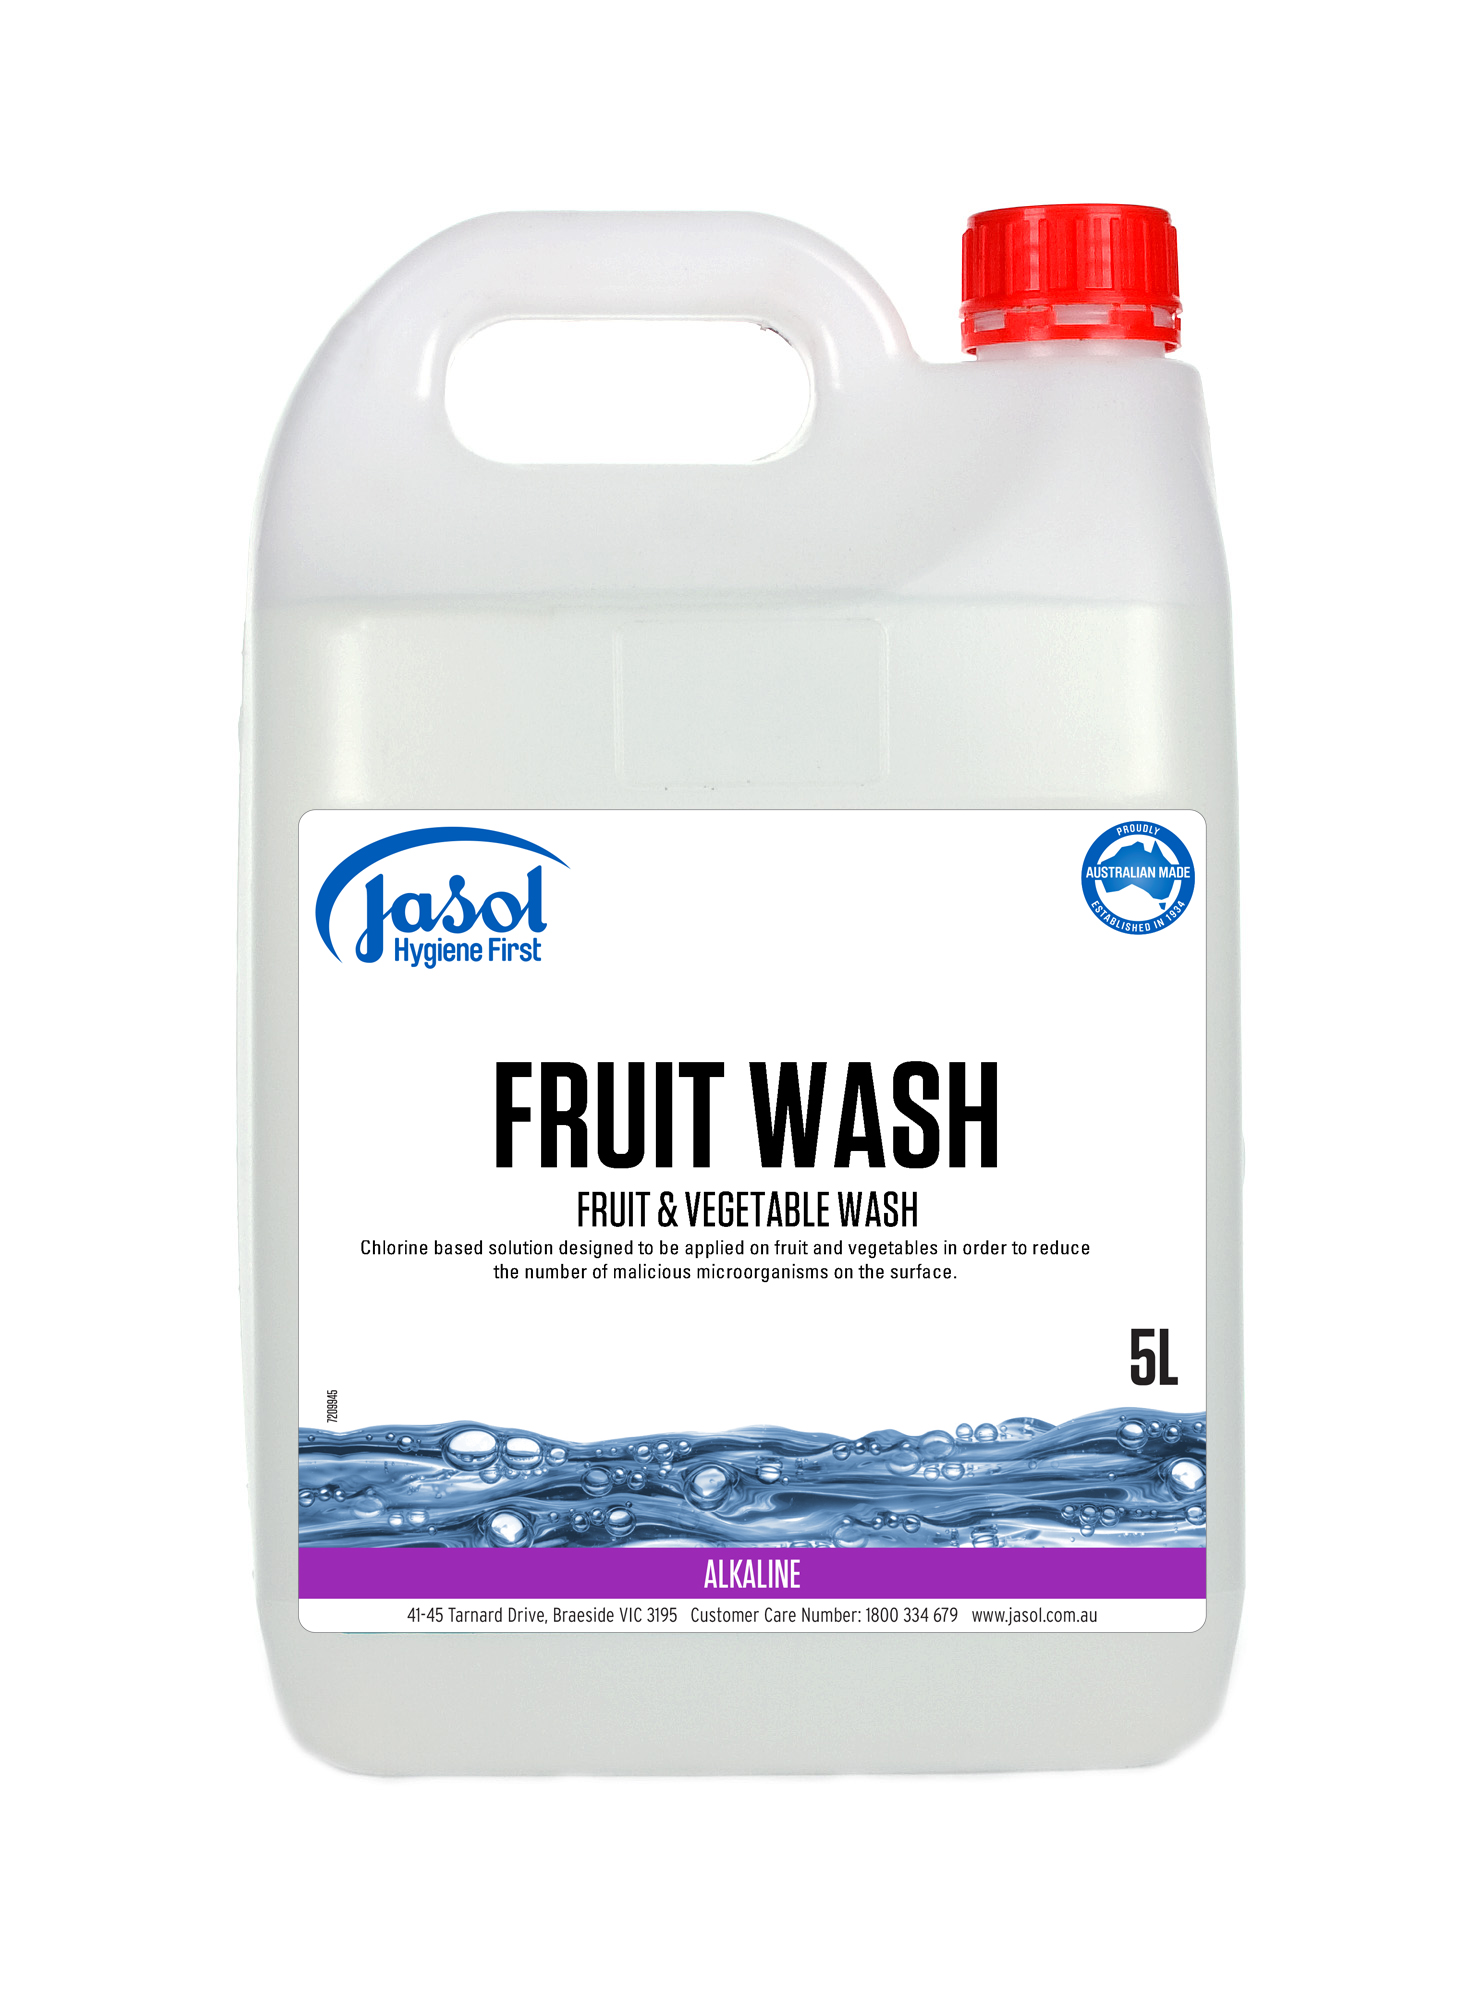 FRUIT WASH